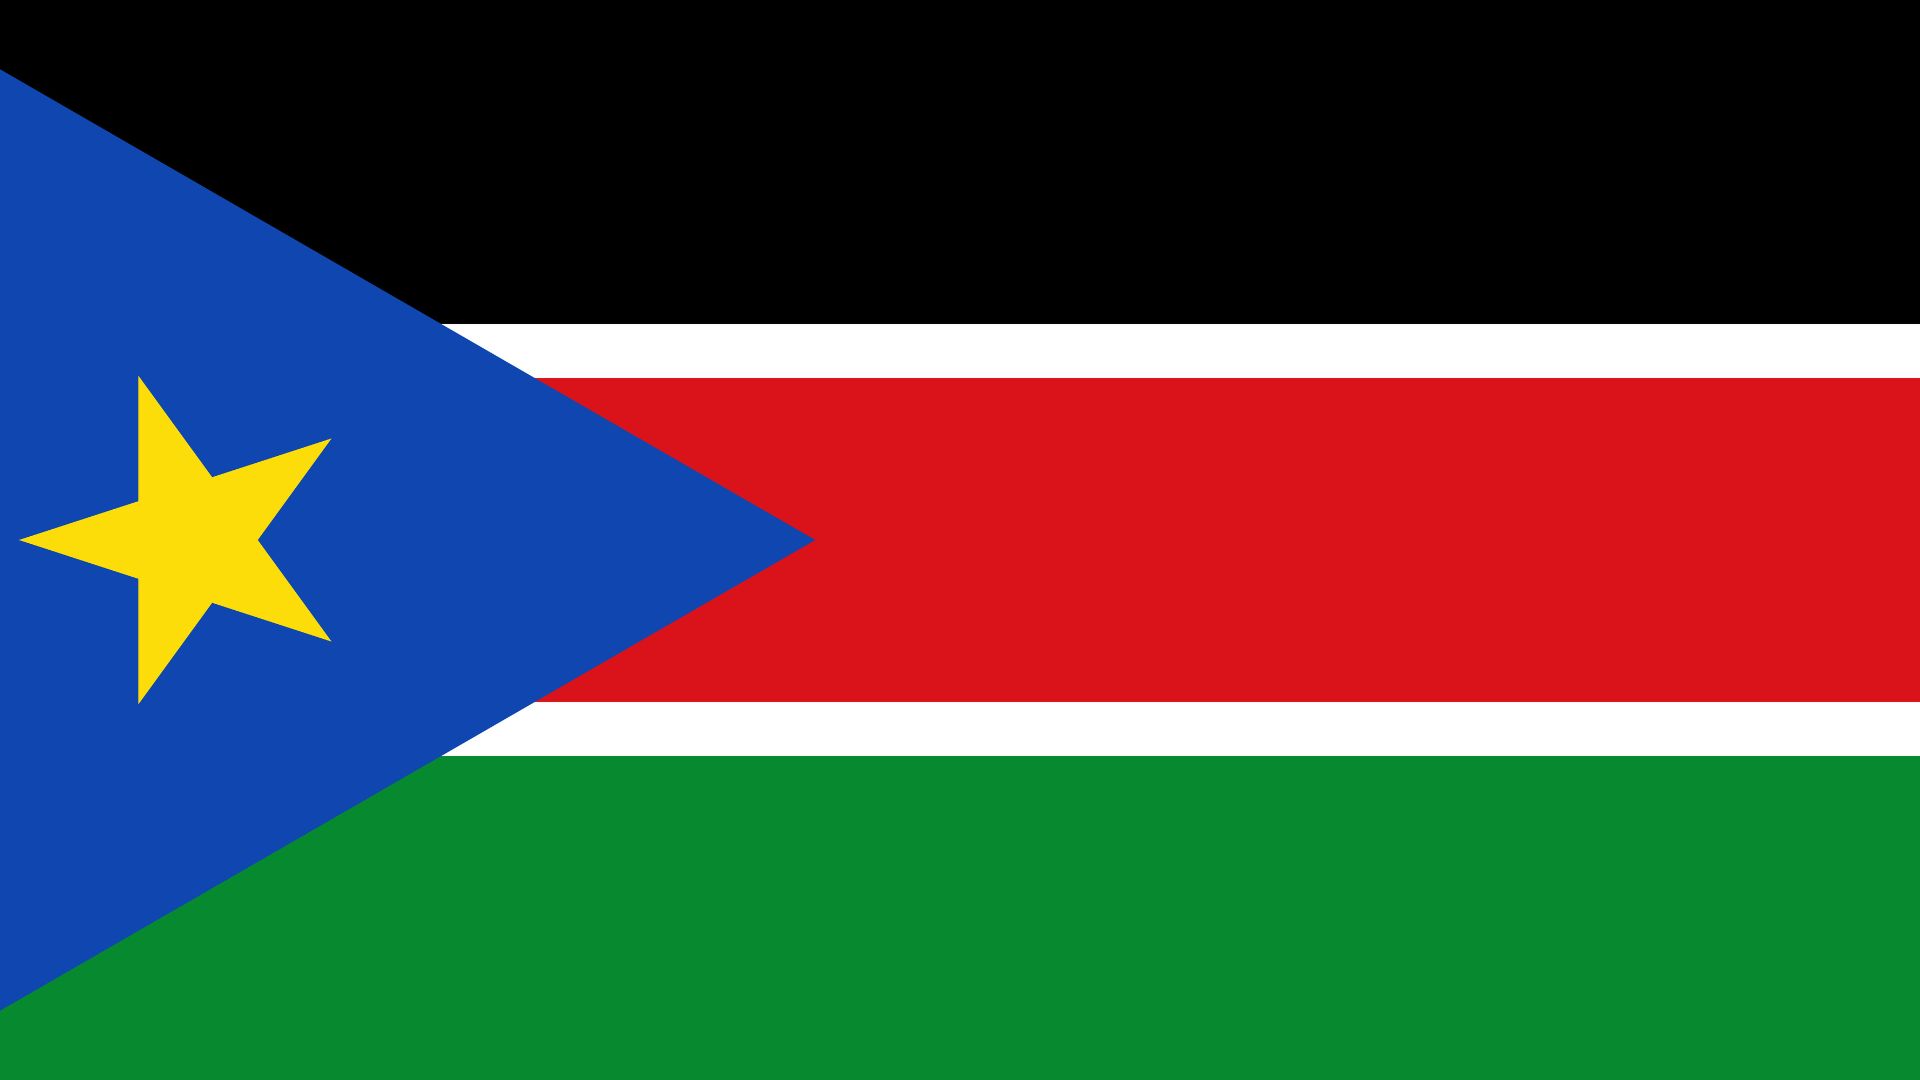 A bandeira do Sudão do Sul é composta pelas cores preto, branco, vermelho e verde da bandeira sudanesa. As faixas horizontais pretas, brancas, vermelhas e verdes da bandeira compartilham o mesmo desenho da bandeira queniana e do simbolismo pan-africano da mesma.